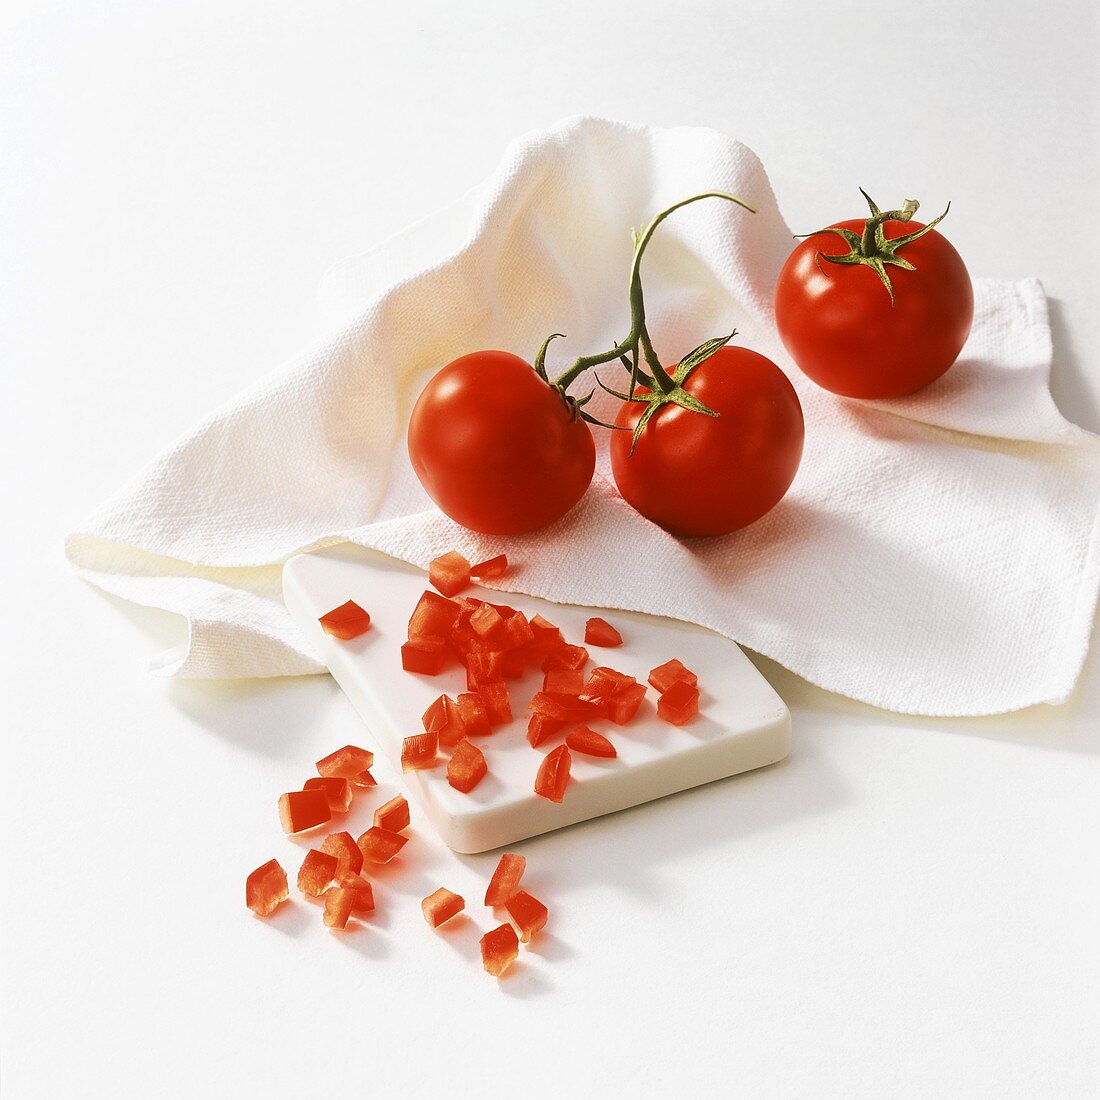 Strauchtomaten und Tomatenwürfel auf Tuch und Schneidebrett